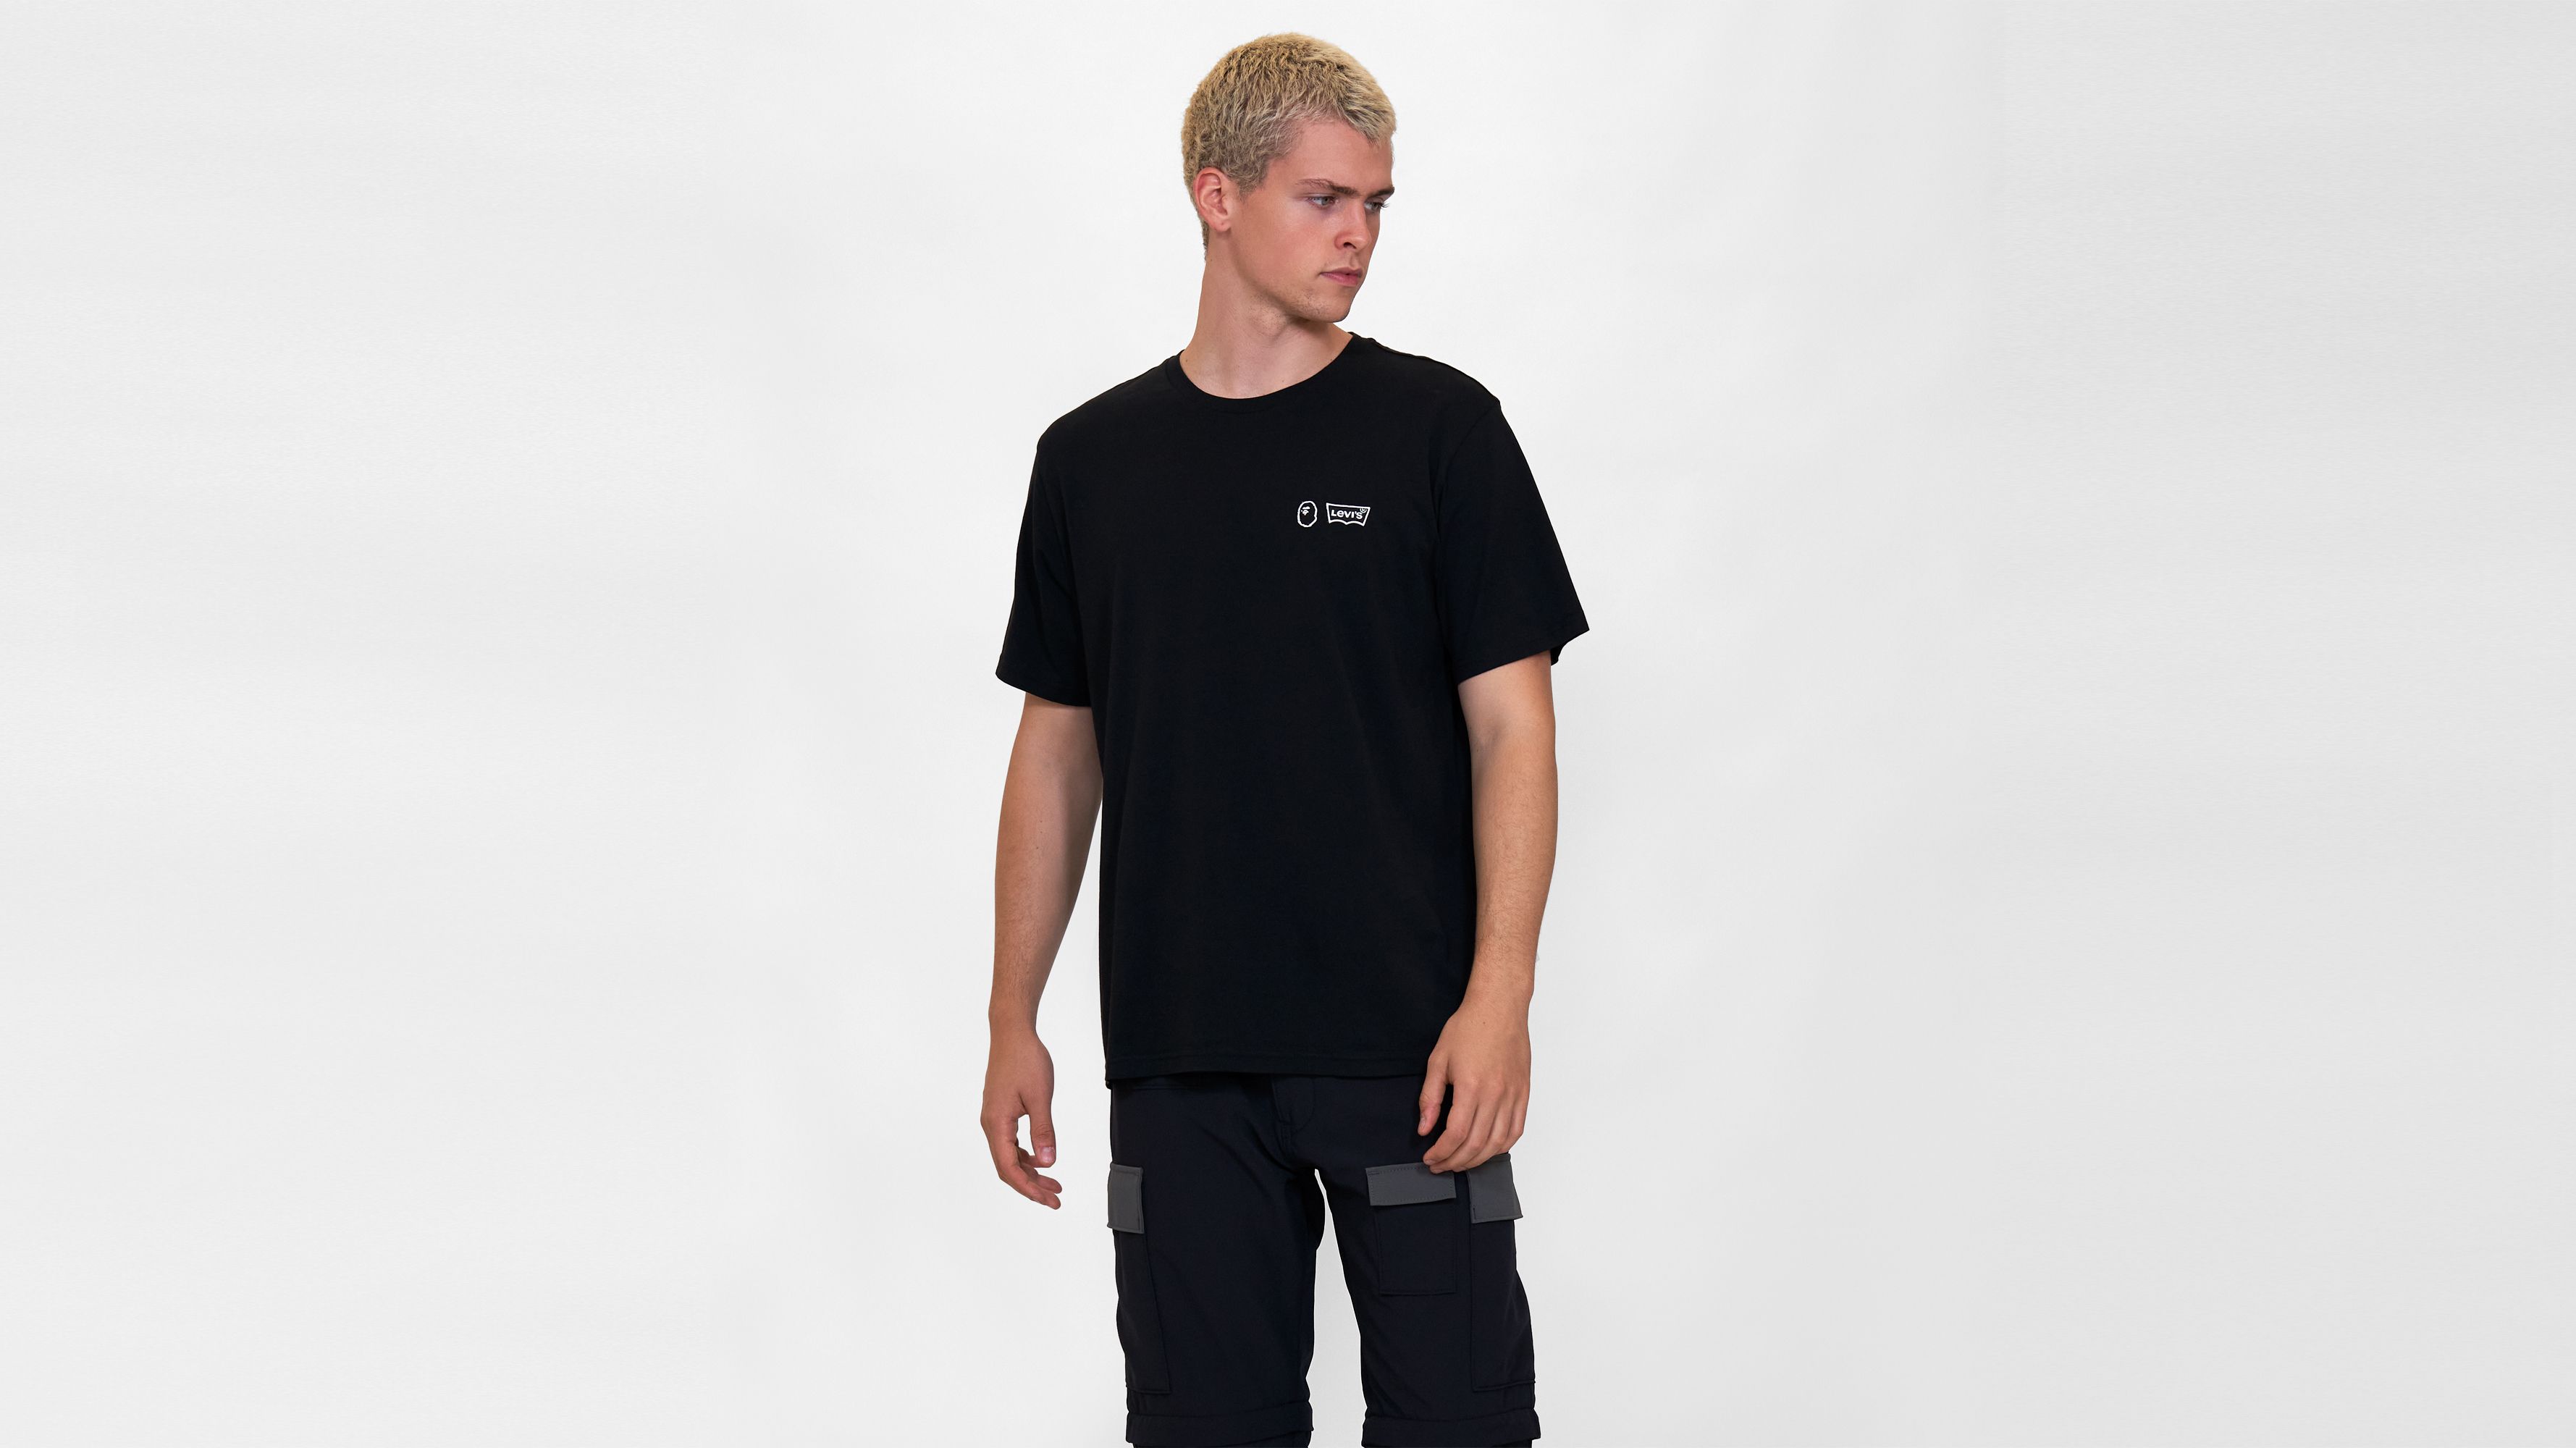 levi's t-shirt black